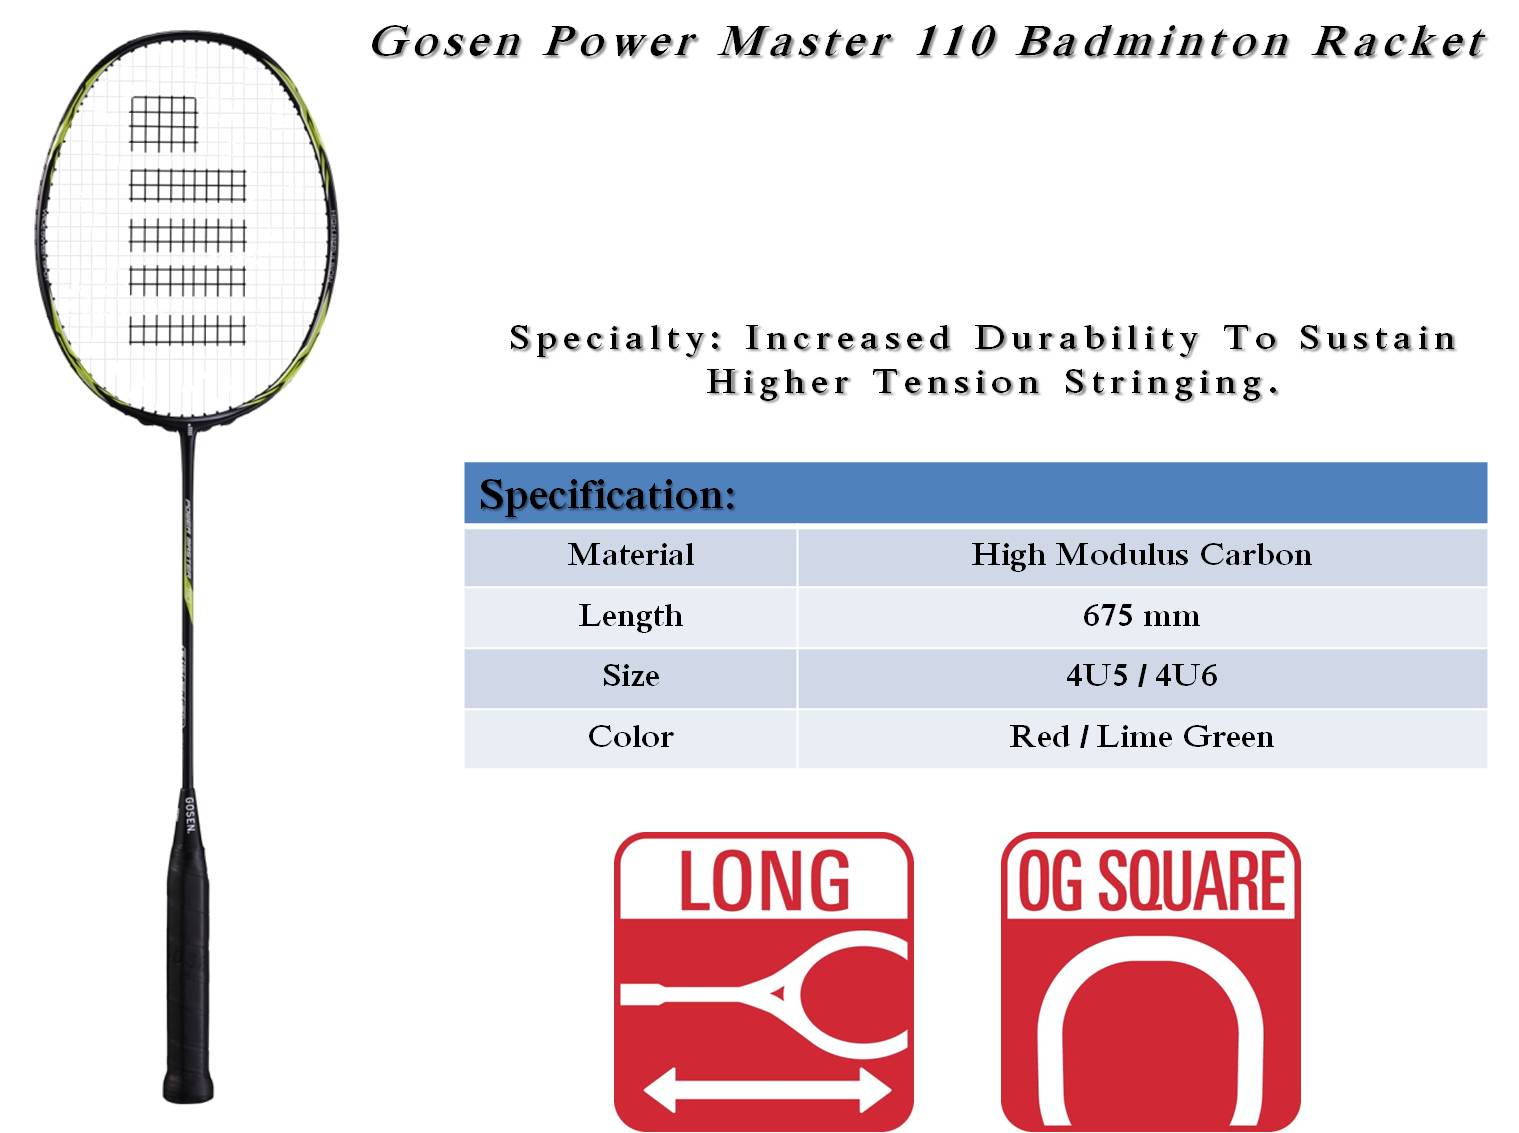 Gosem_Power_Master_110_Badminton_Racket_Khelmart